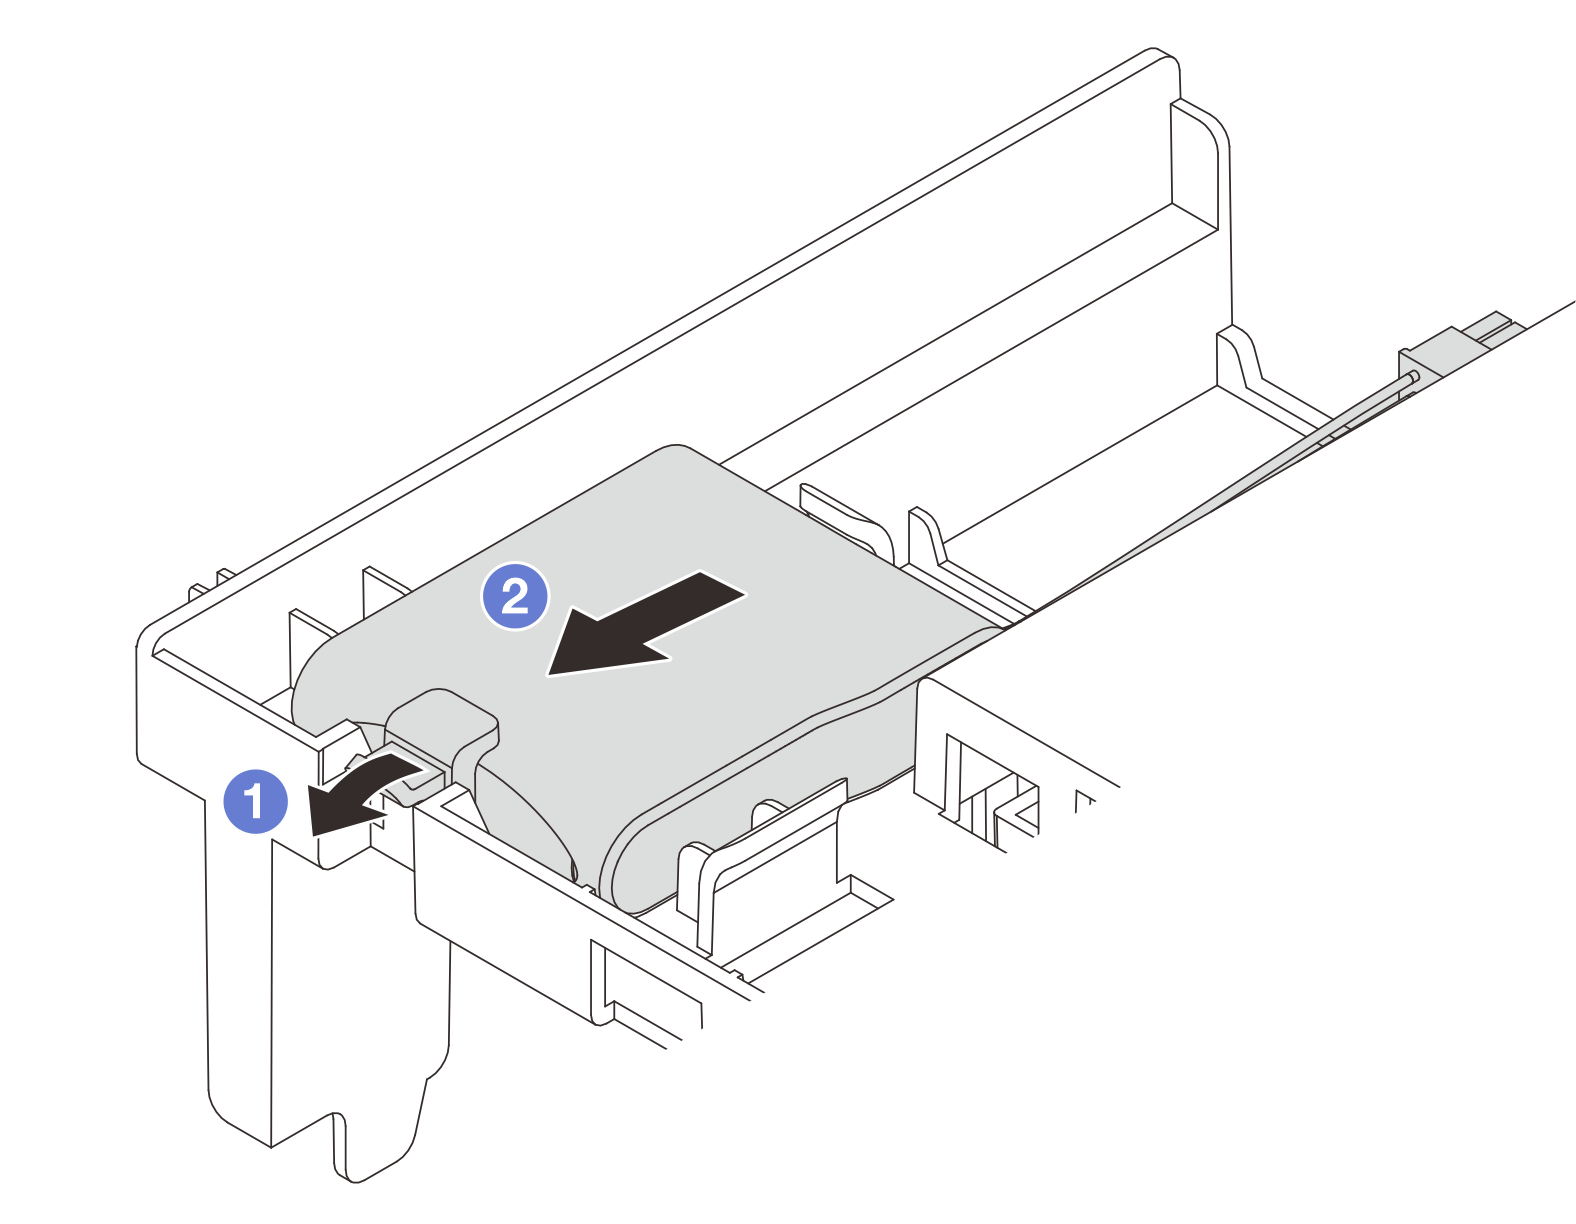 Remove a RAID flash power module from the air baffle